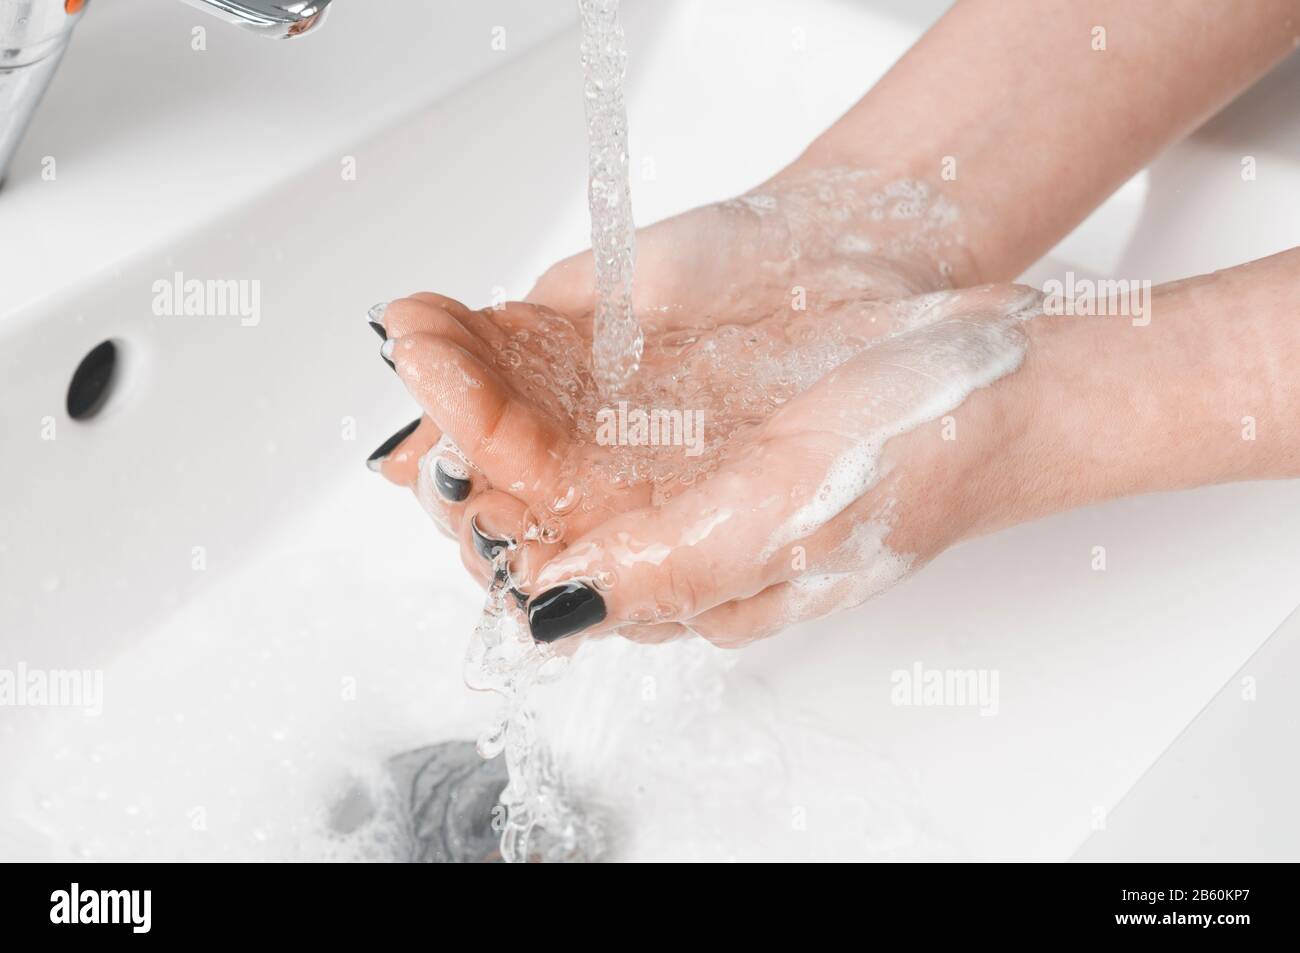 Tecniche efficaci di lavaggio a mano: Donna risciacquare la mano con acqua. Il lavaggio delle mani è molto importante per evitare il rischio di contagio da coronavirus e bact Foto Stock